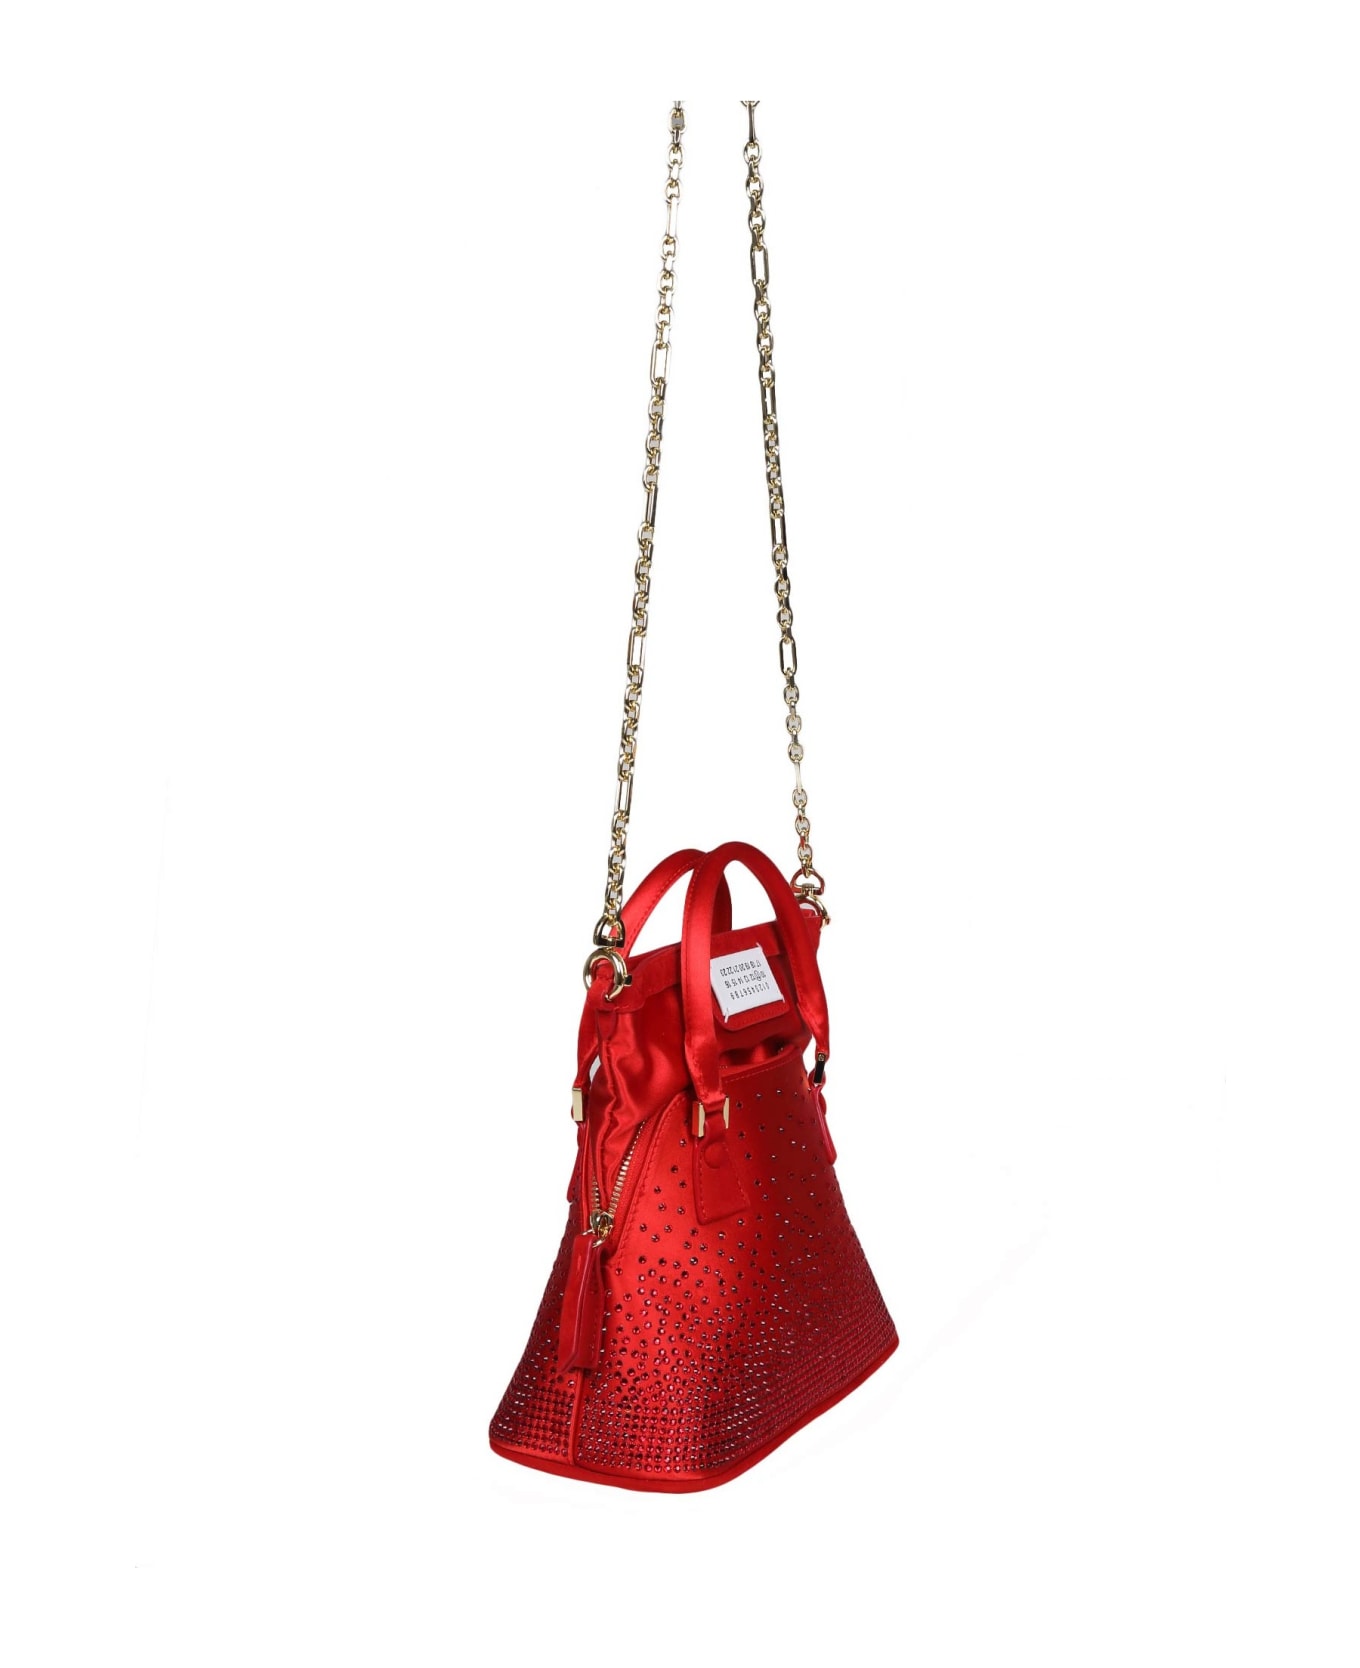 Maison Margiela 5ac Classic Handbag - Red